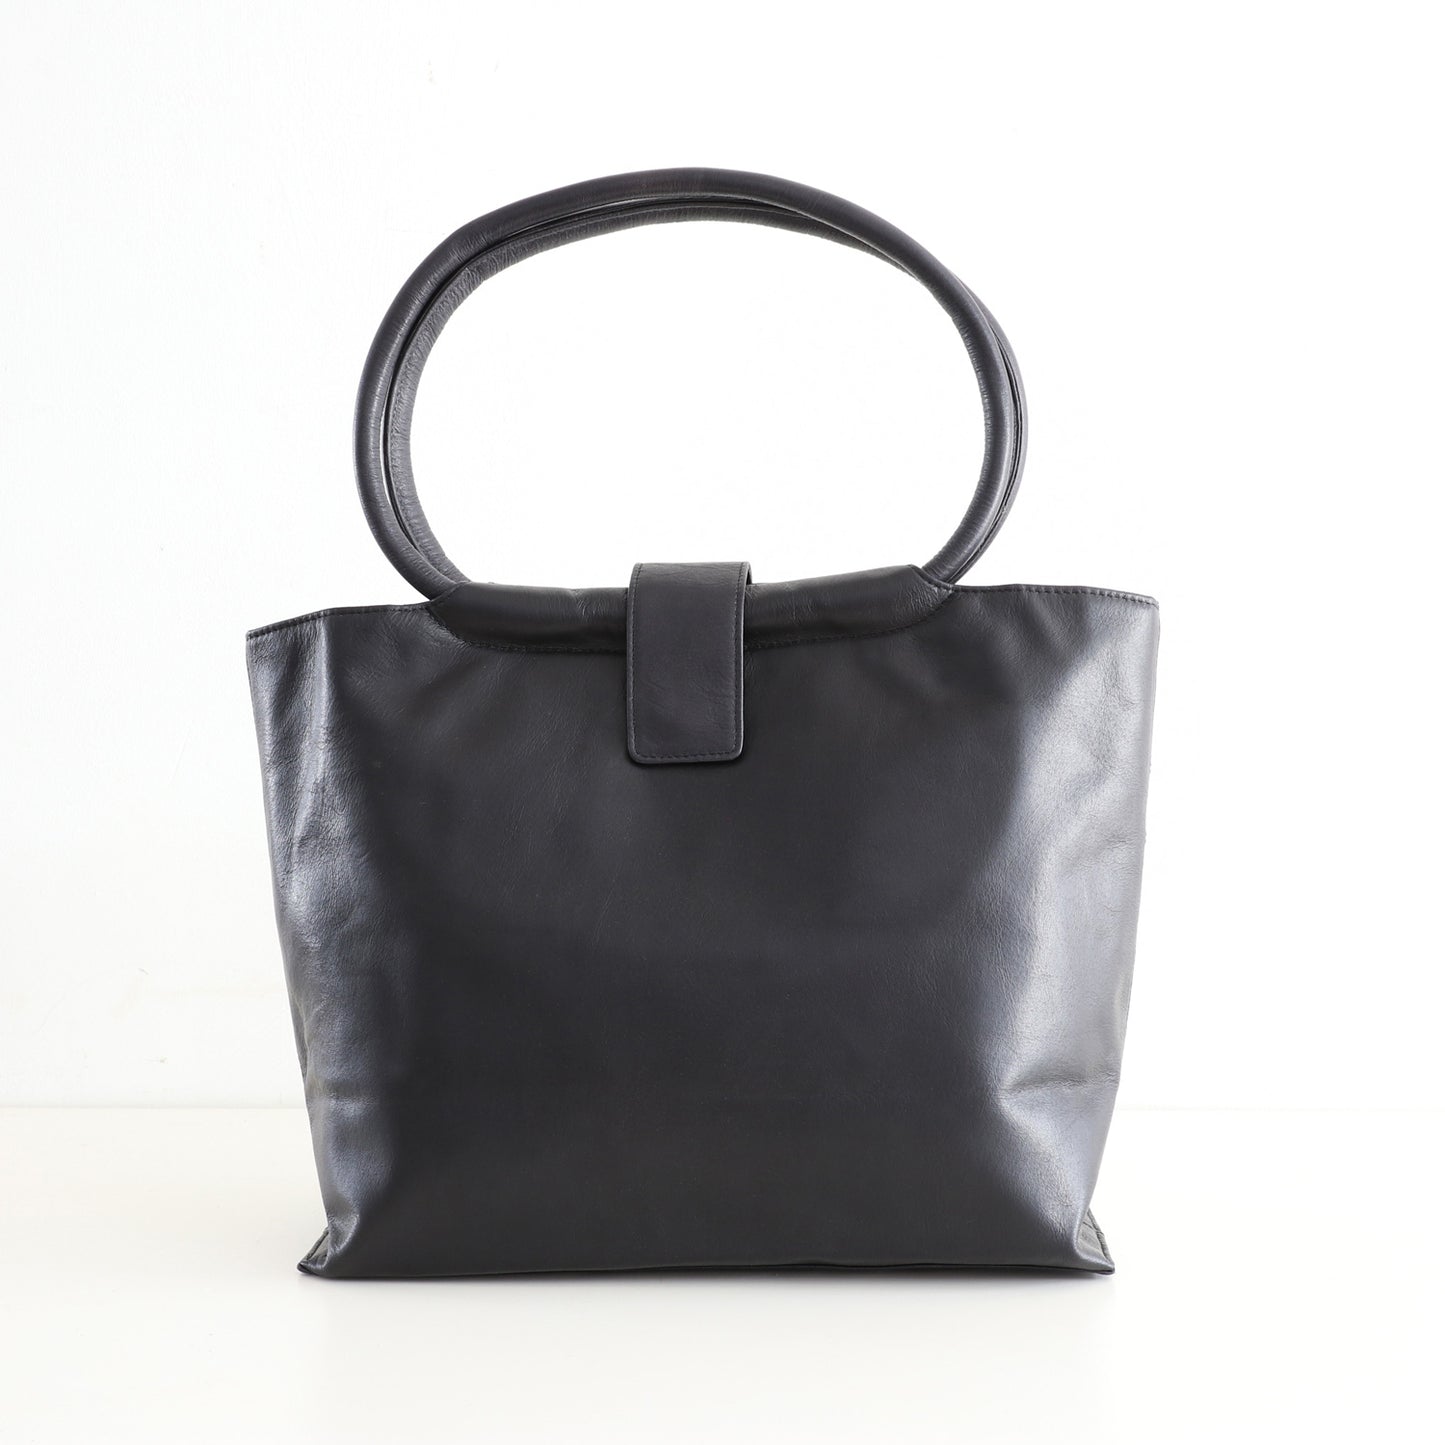 Leather Handbag with Hoop Handles - Black